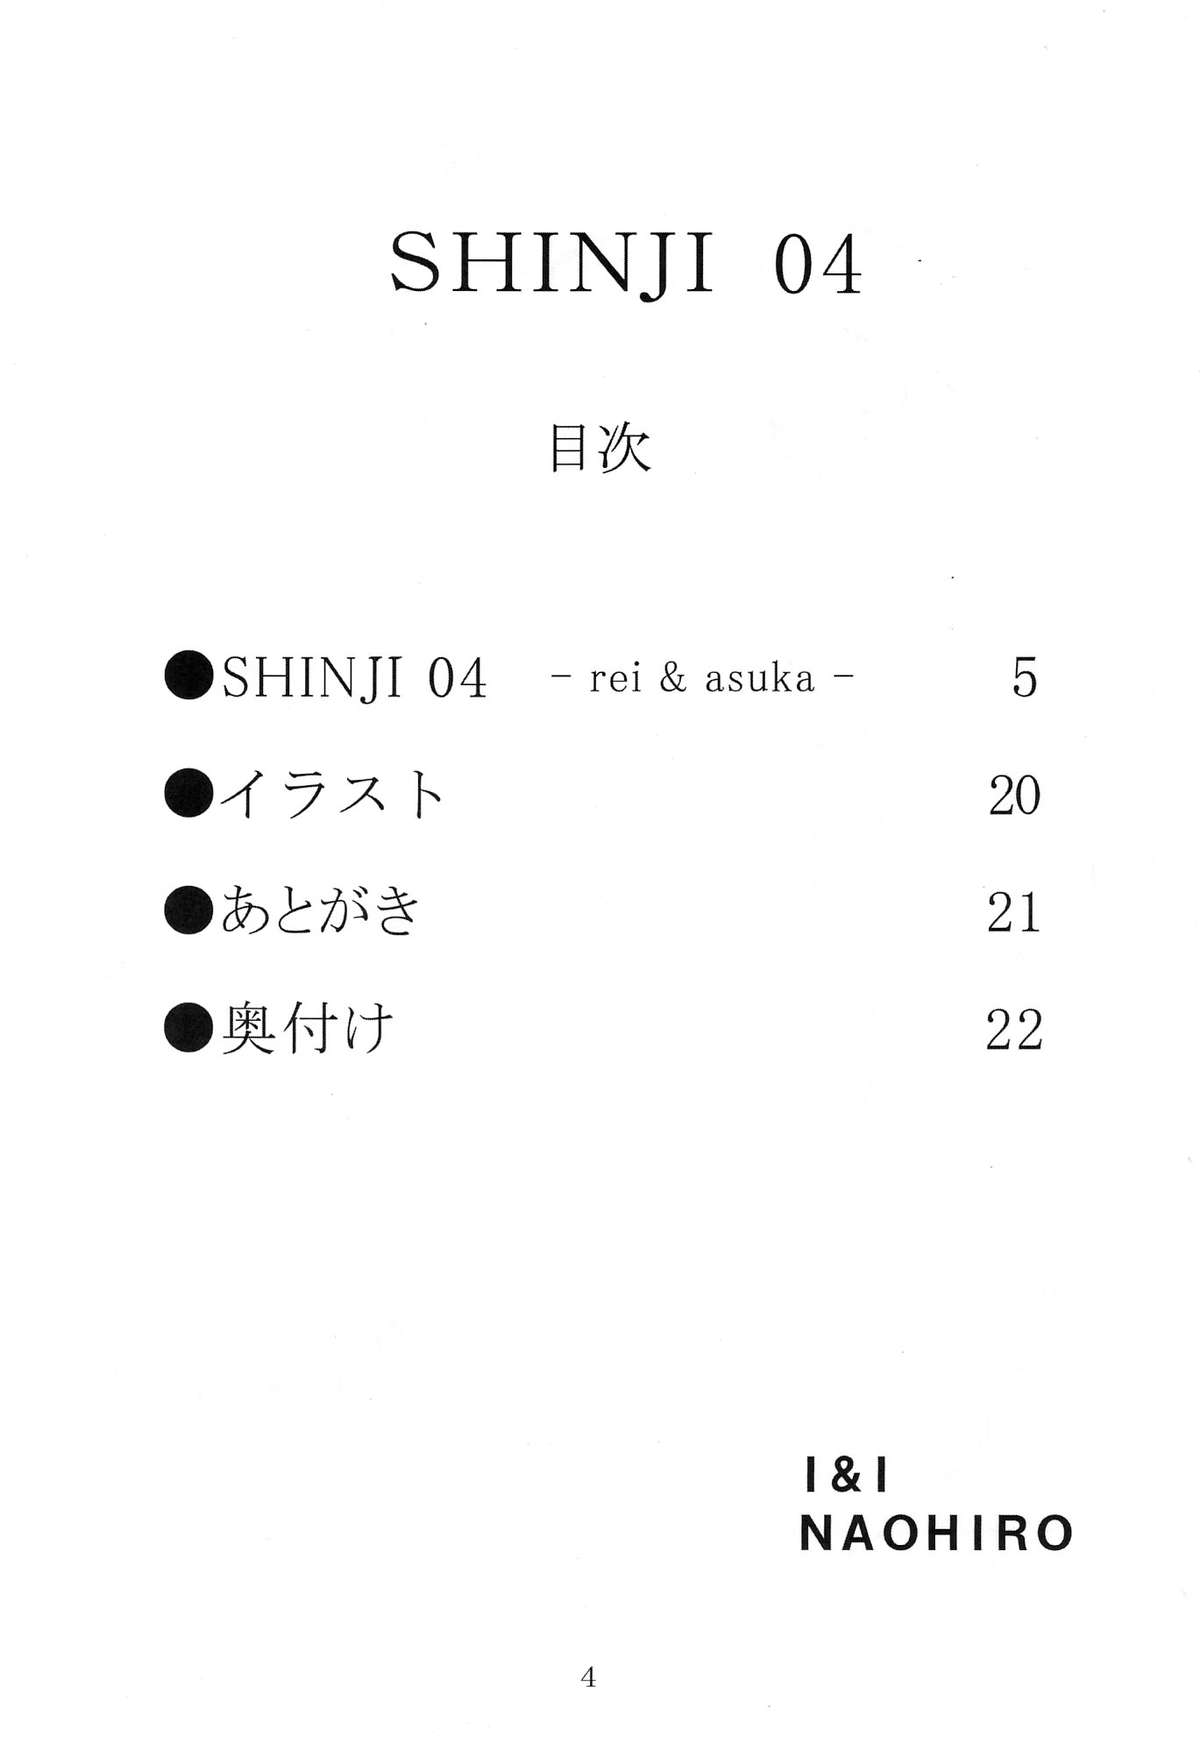 (サンクリ29) [I&I (Naohiro)] SHINJI 04 - rei & askua (新世紀エヴァンゲリオン)